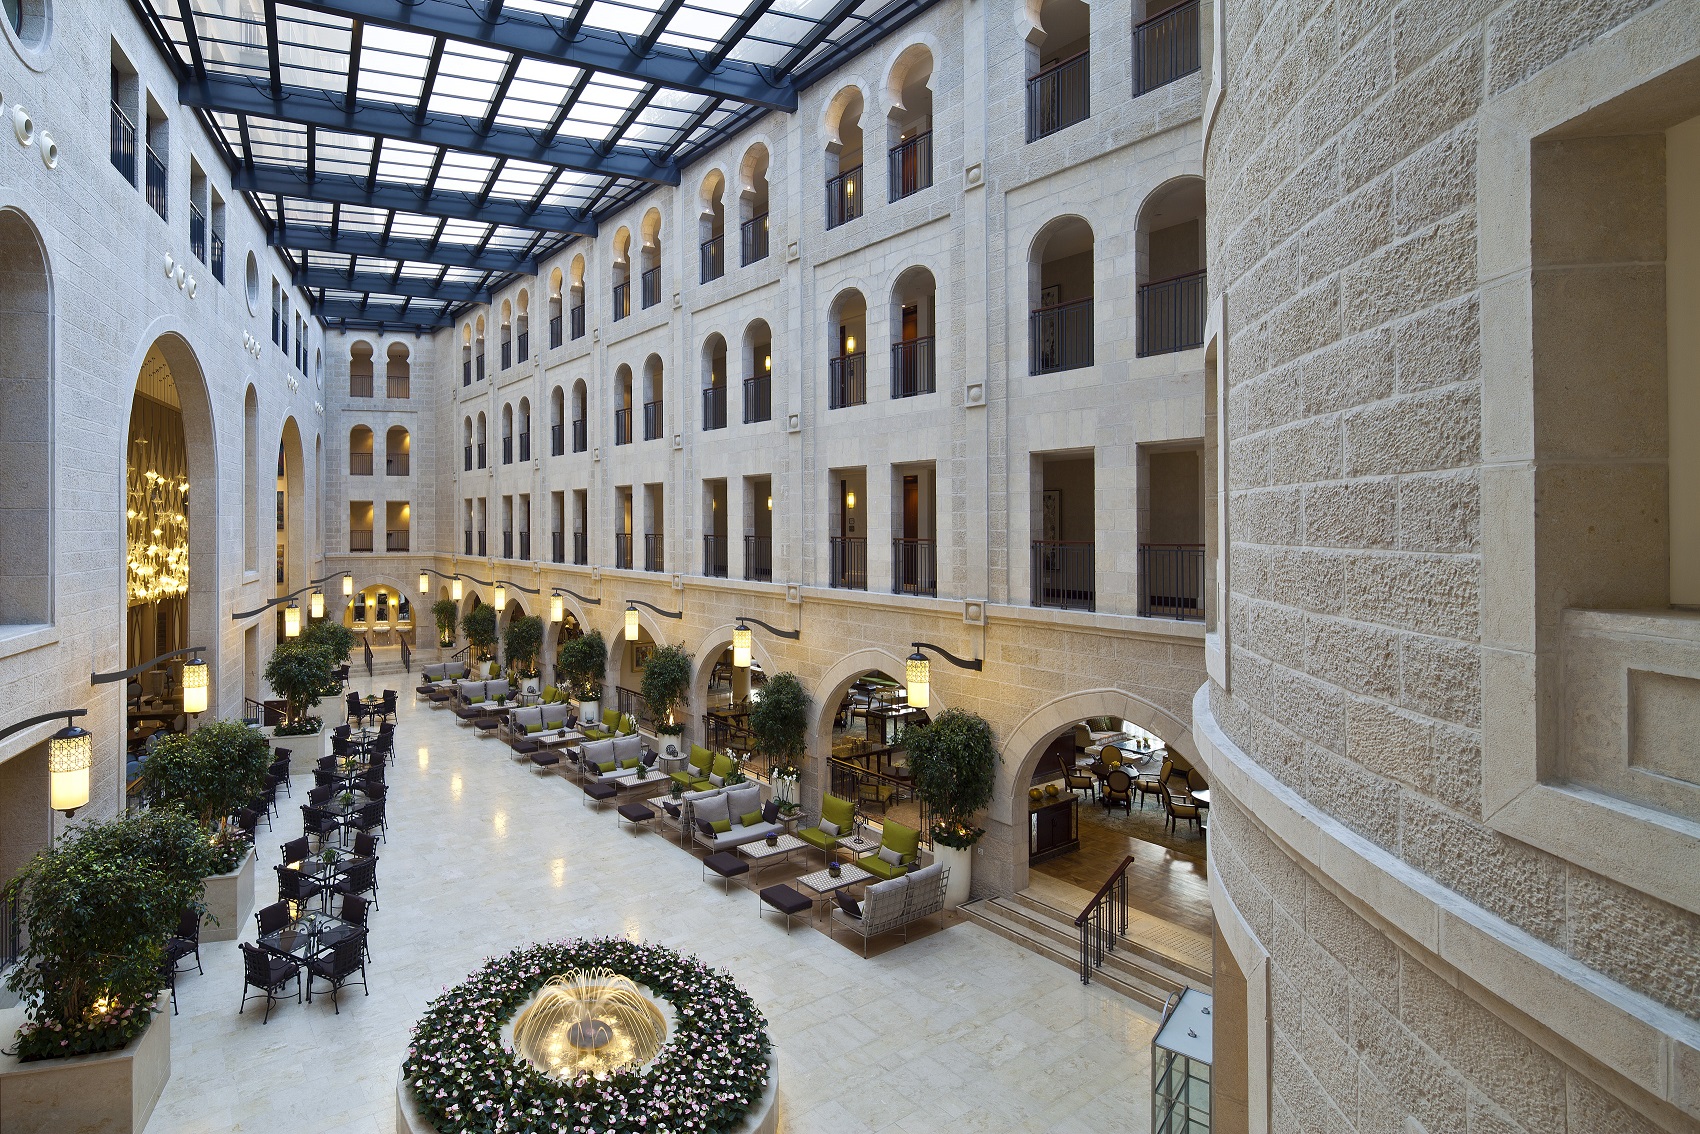 ירושלים בראש: מלון וולדורף אסטוריה נבחר כמלון המוביל הטוב בישראל לשנת 2022